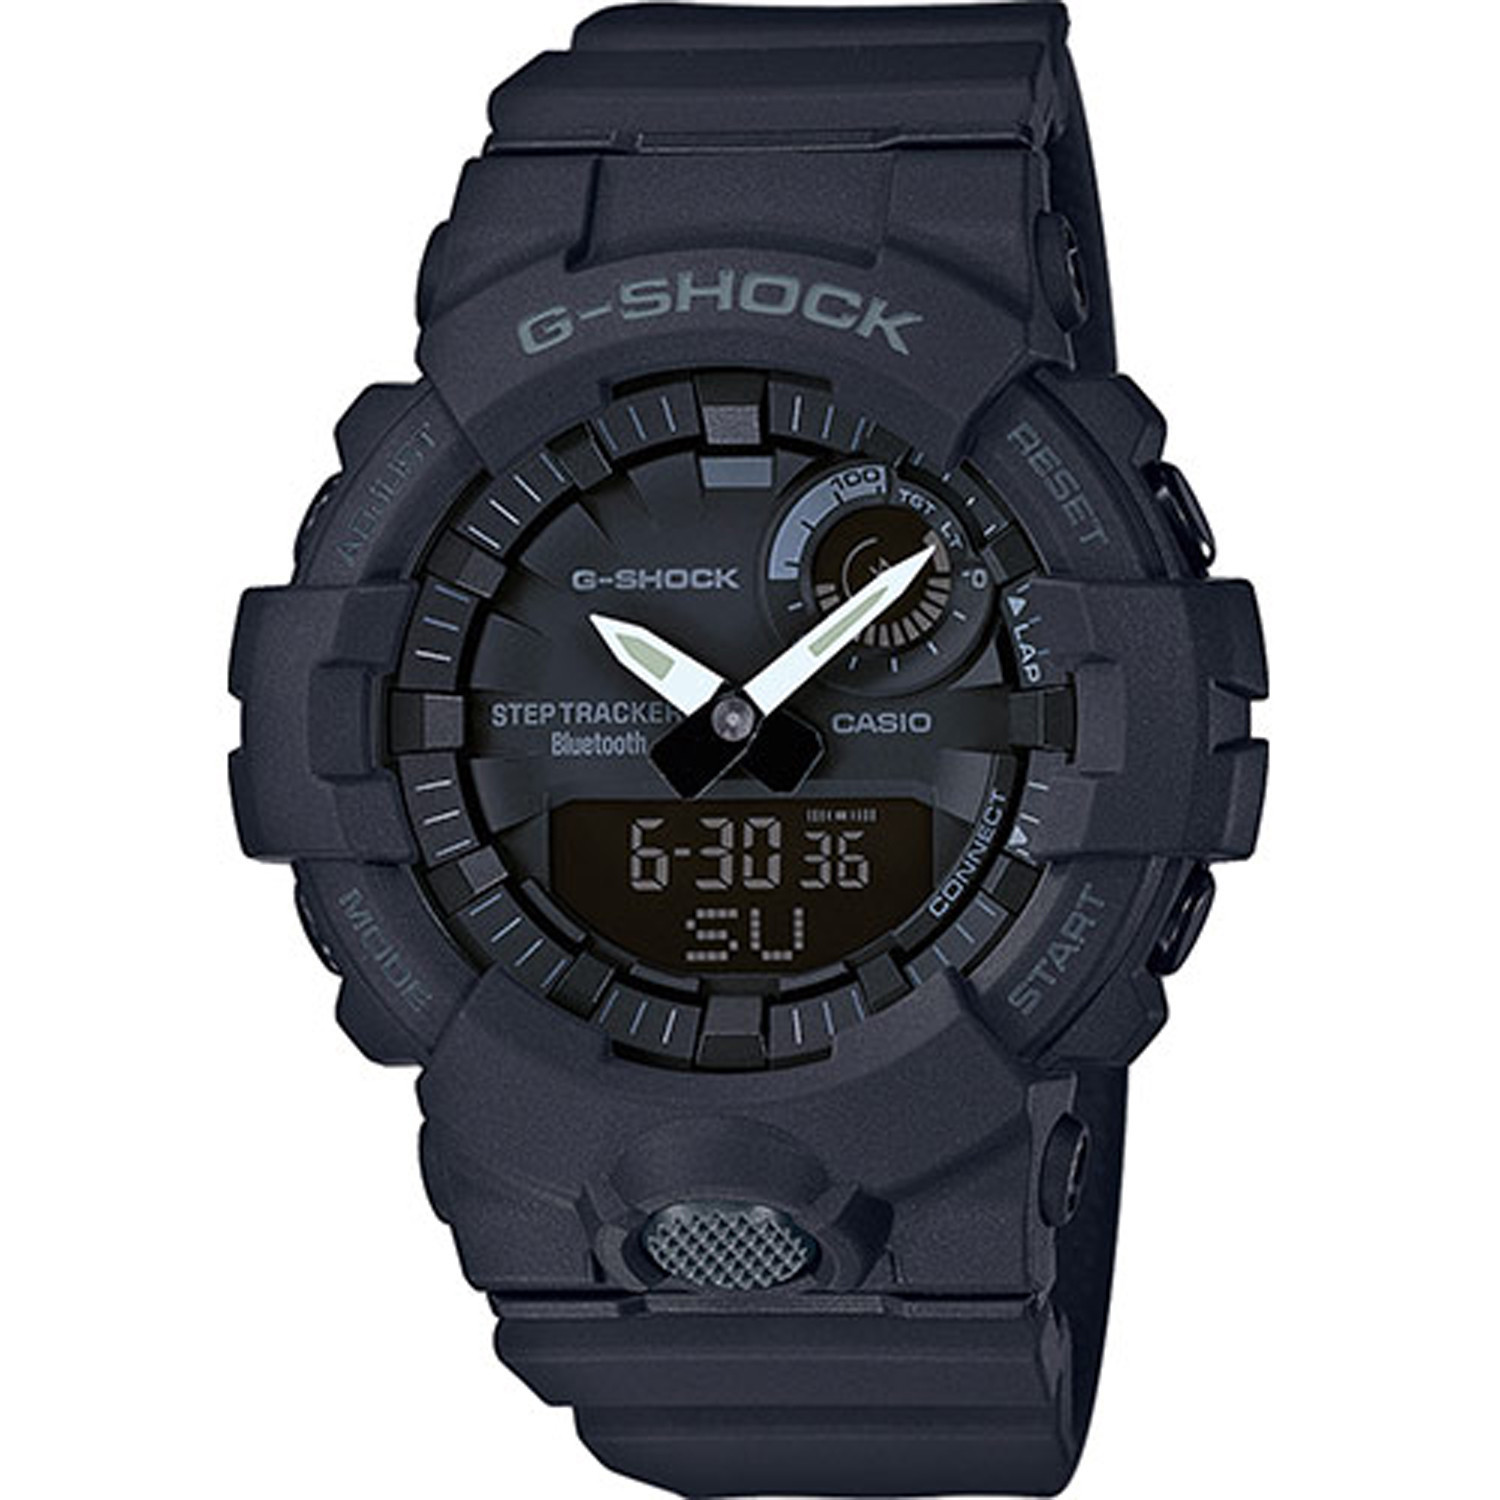 Montre Casio G-Shock noire
Step Tracker Bluetooth